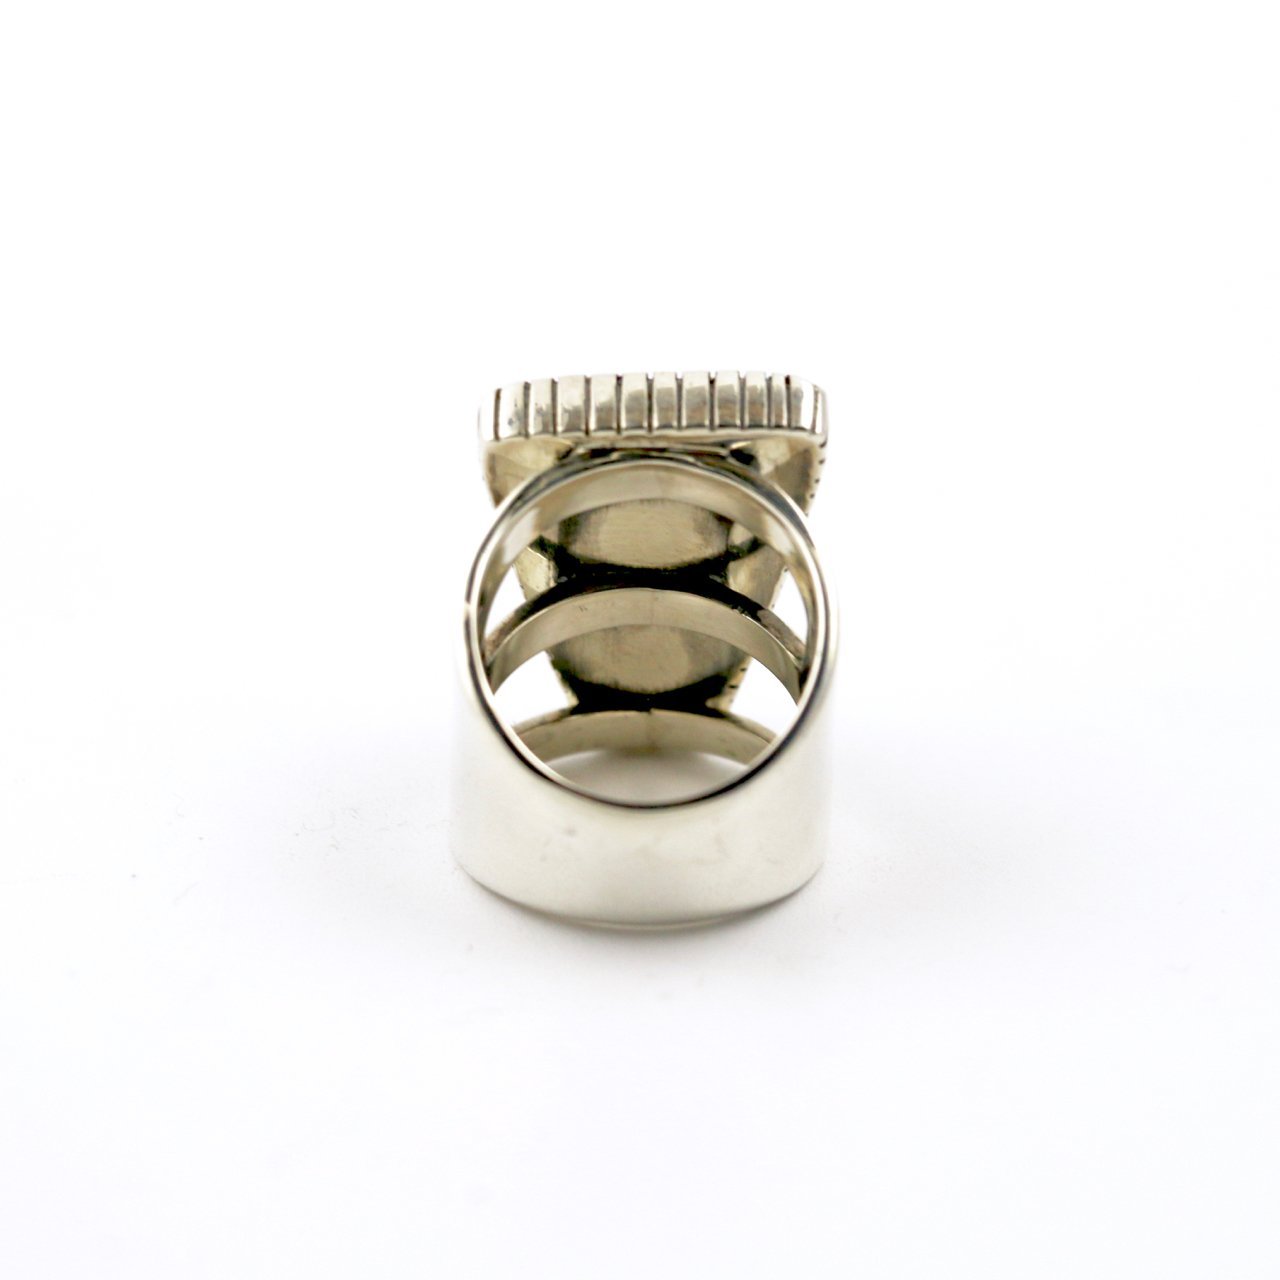 Tri-Toned Intarsia Ring - Kingdom Jewelry